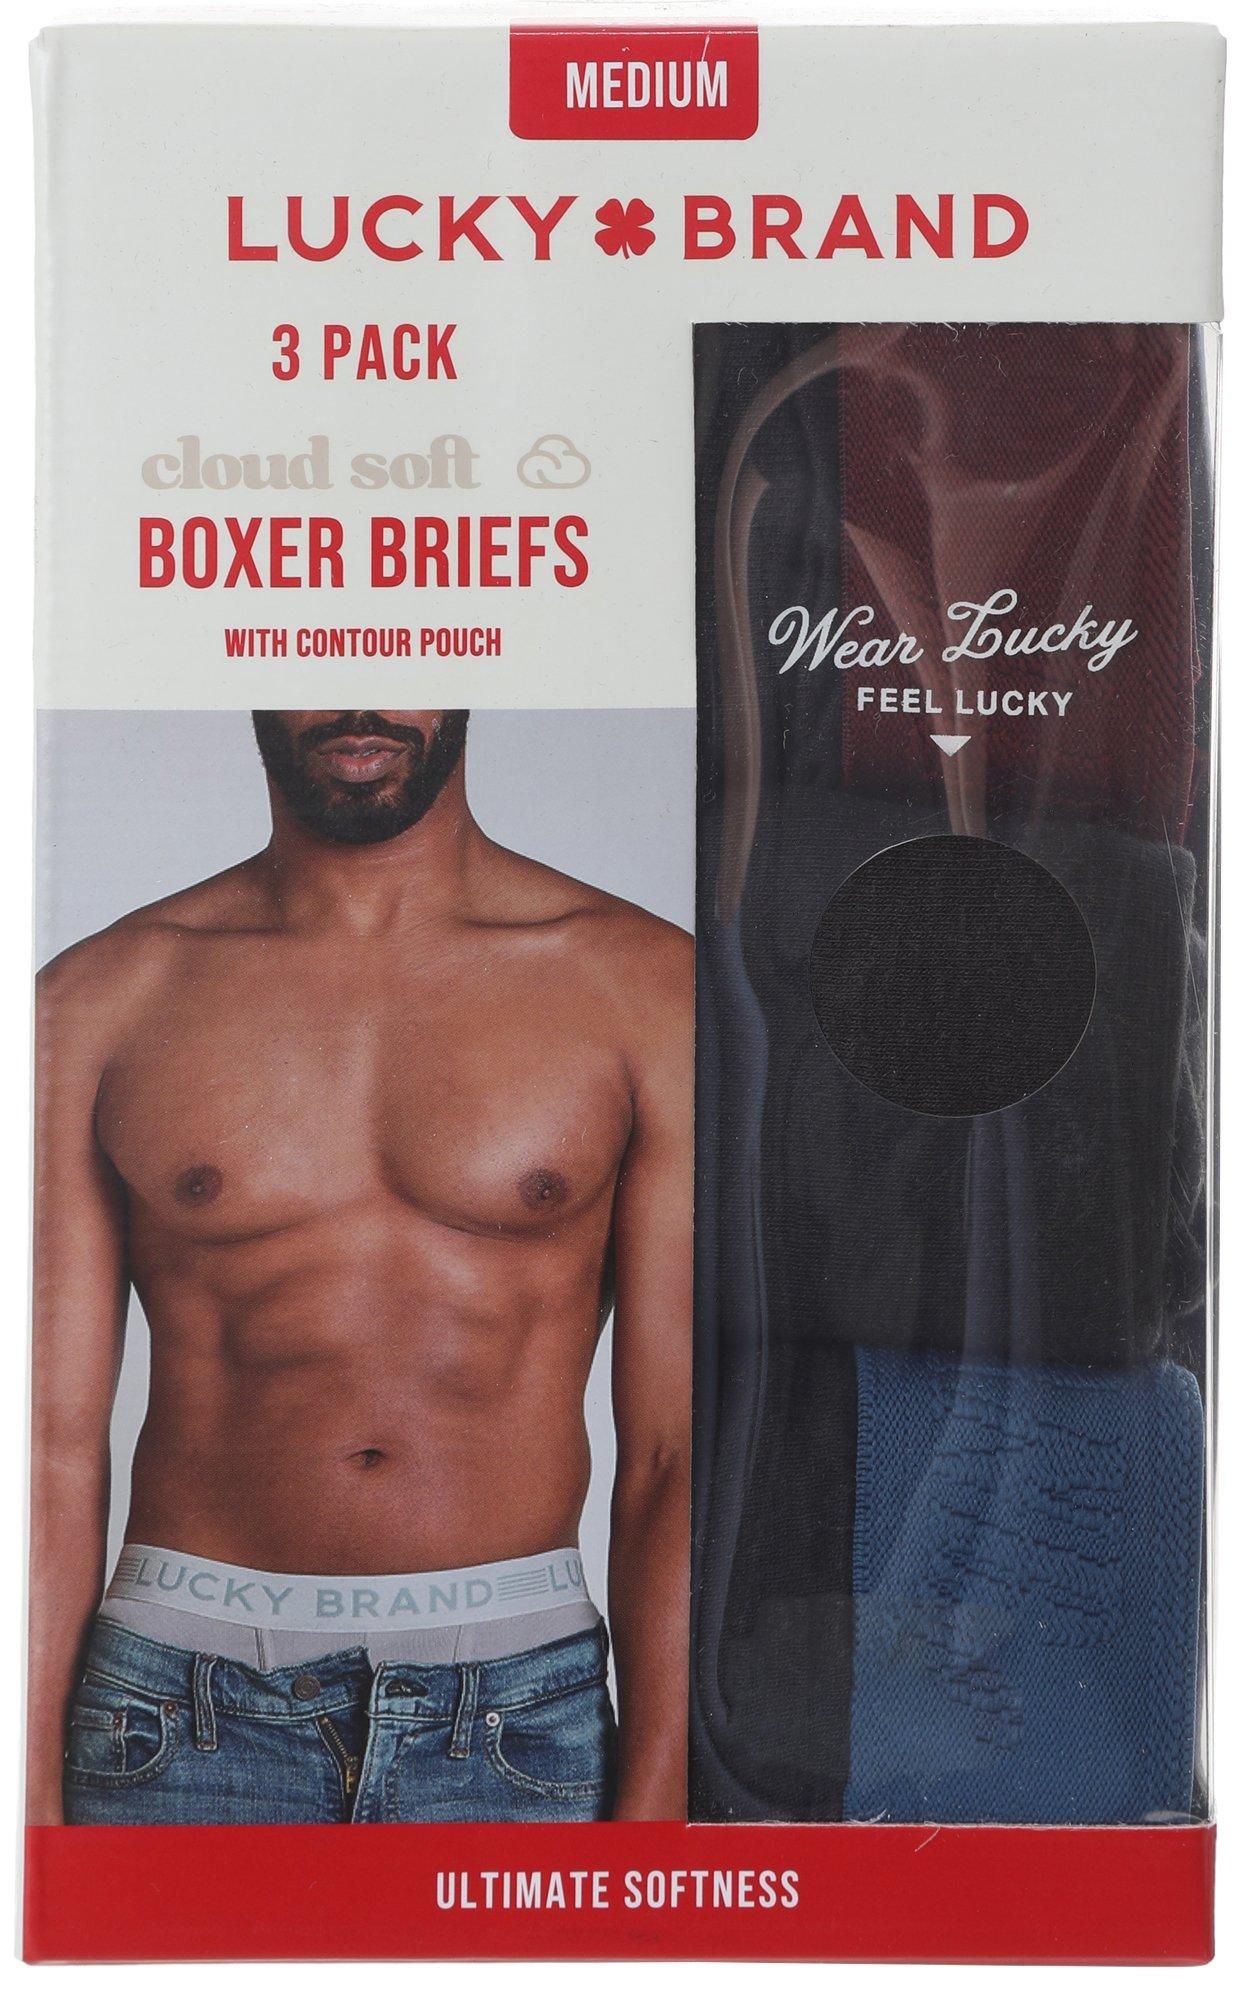 Men's 3 Pk Boxer Briefs